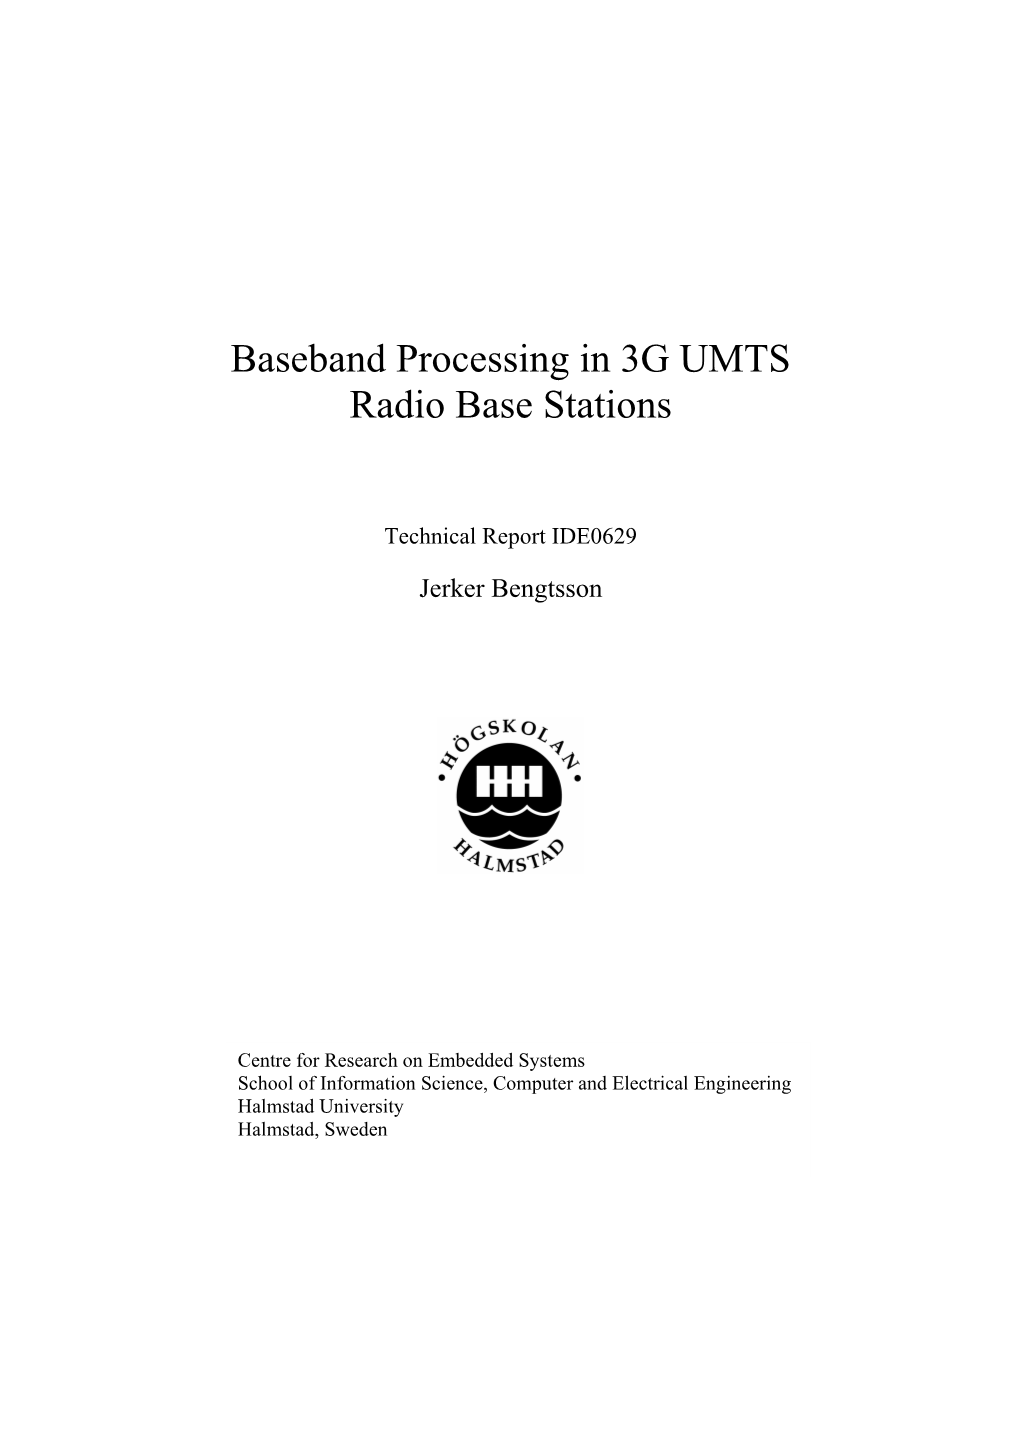 Baseband Processing in 3G UMTS Radio Base Stations